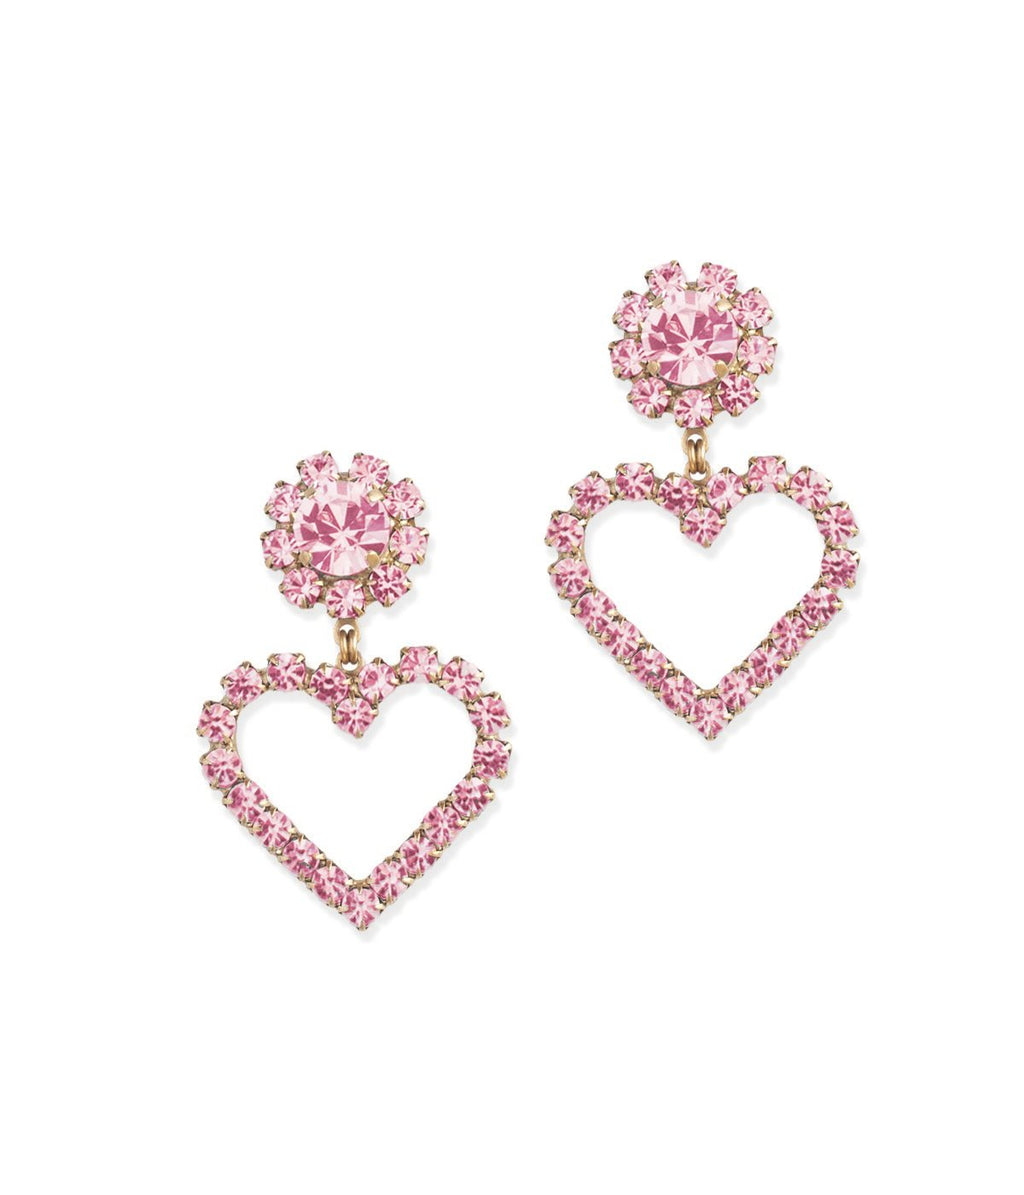 Cupid Heart Earrings in Blush – Loren Hope